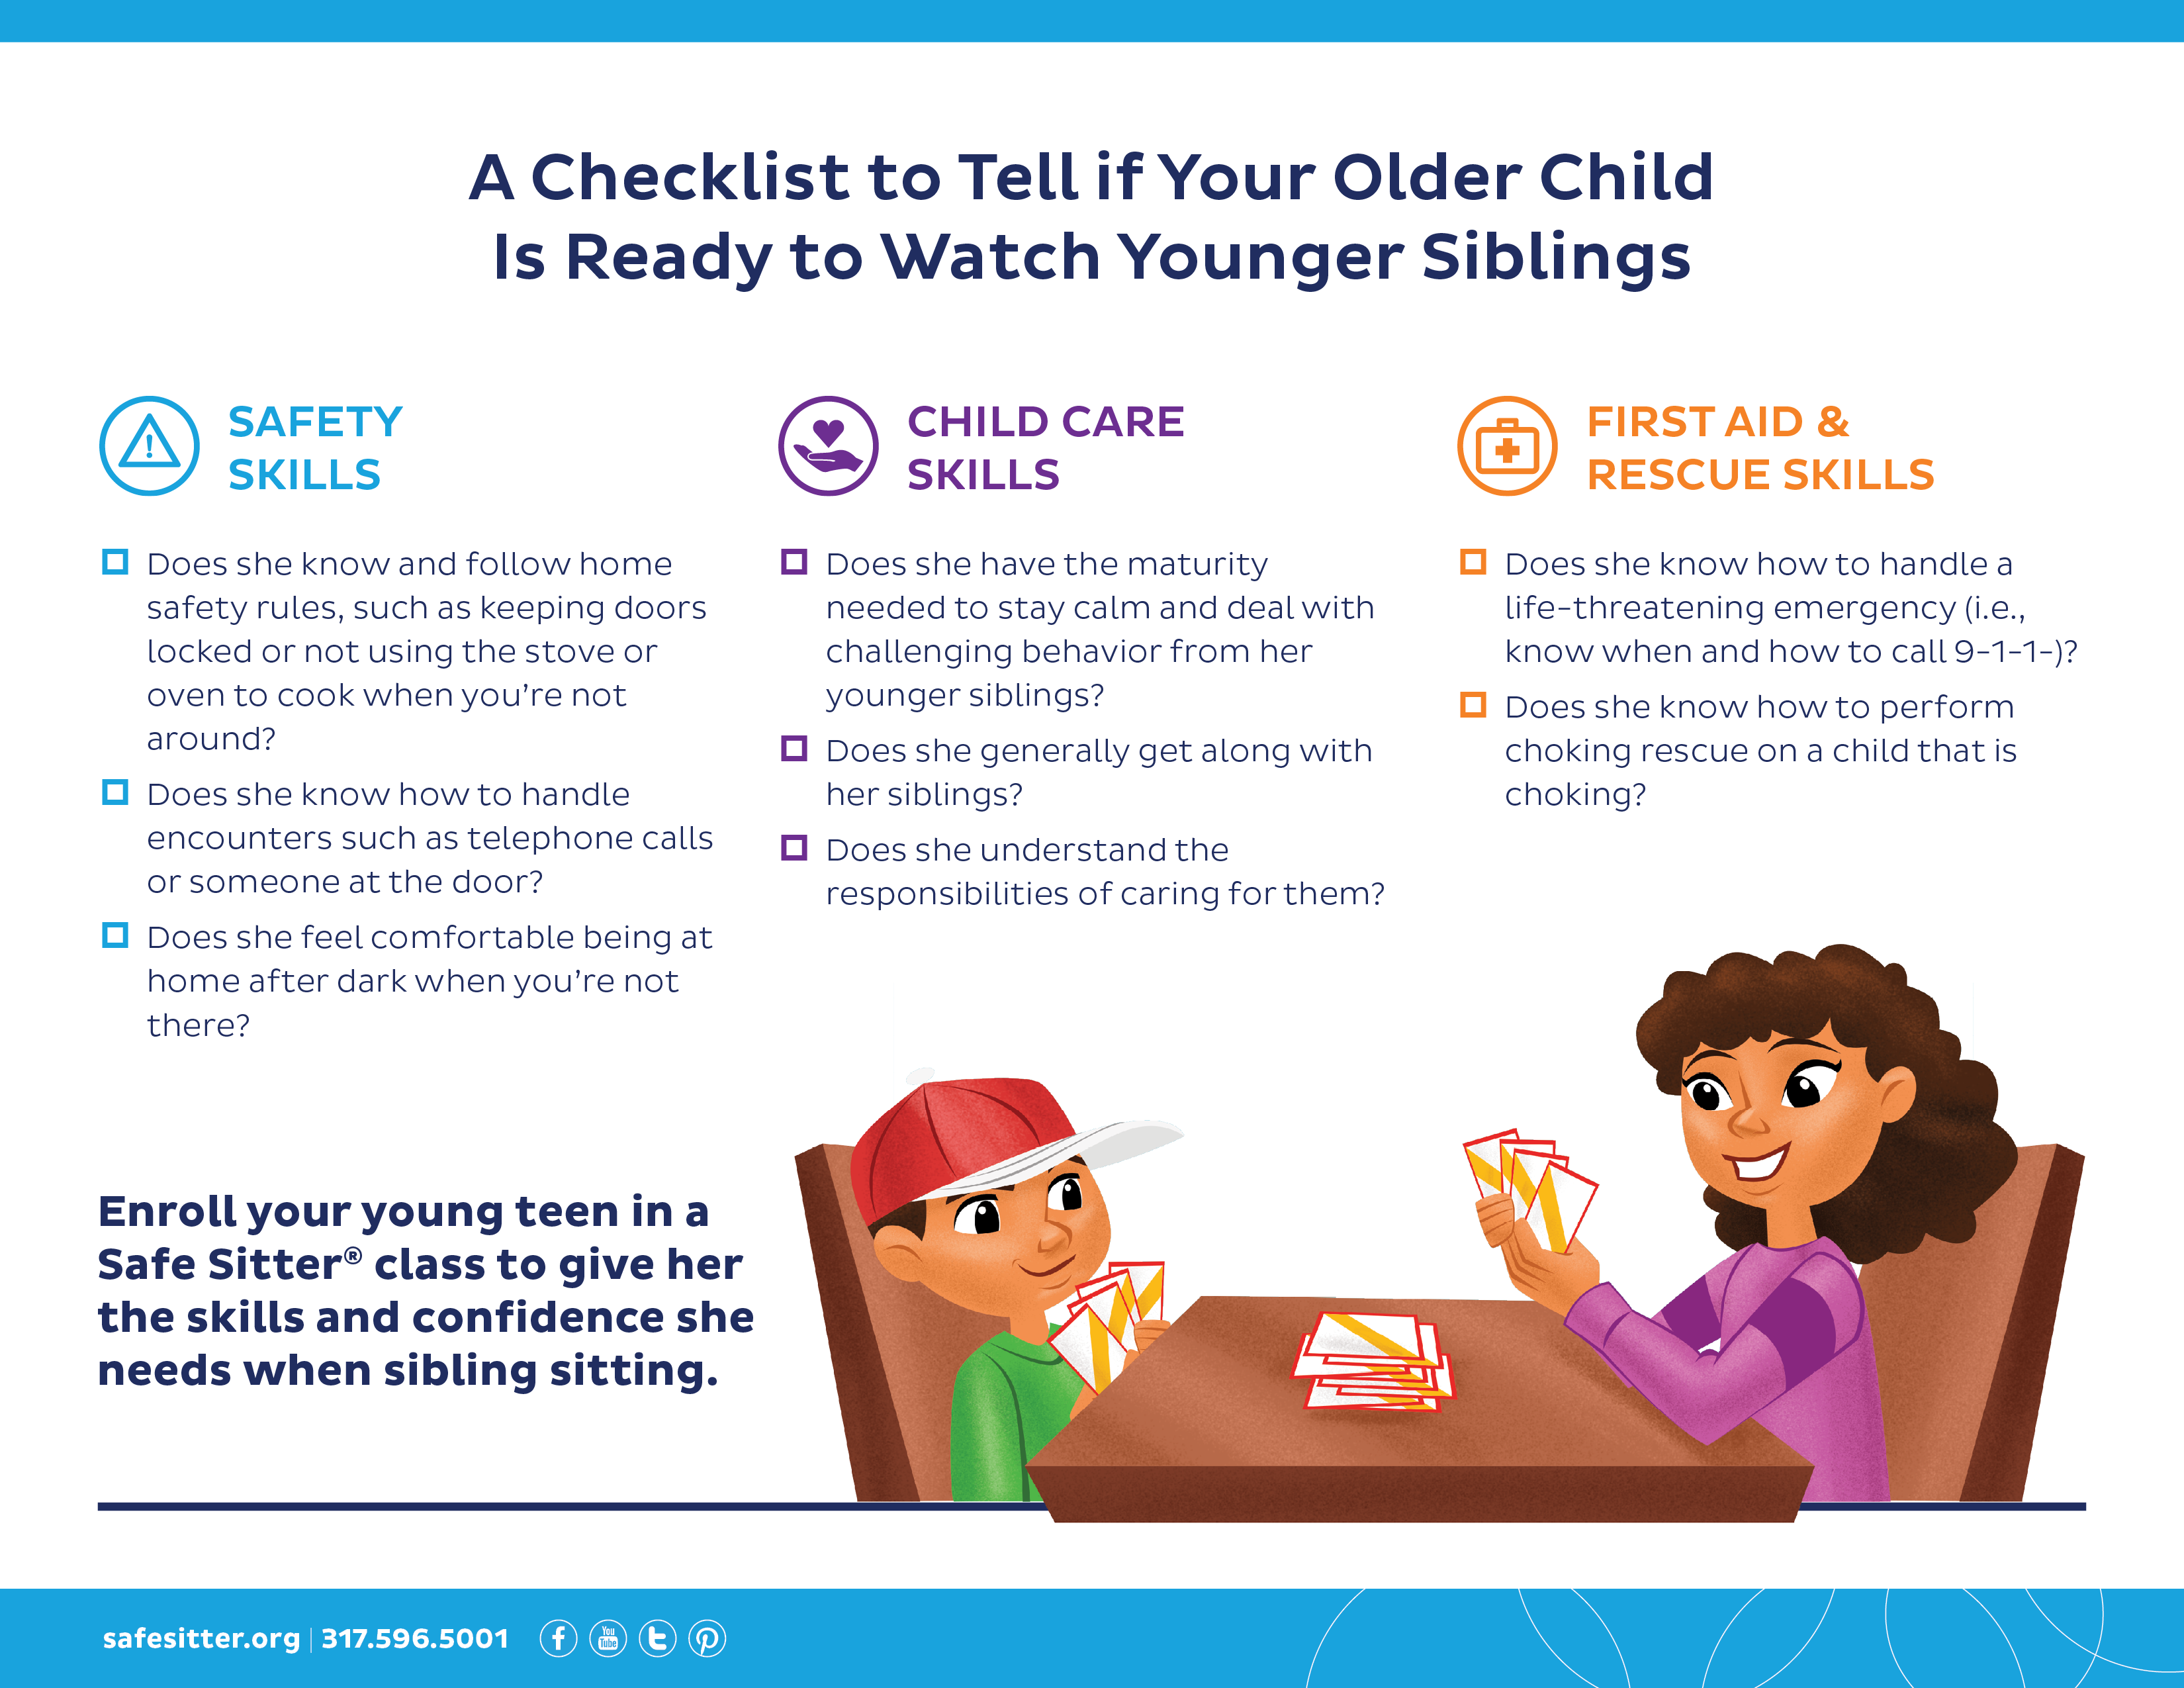 sibling-sitting-checklist